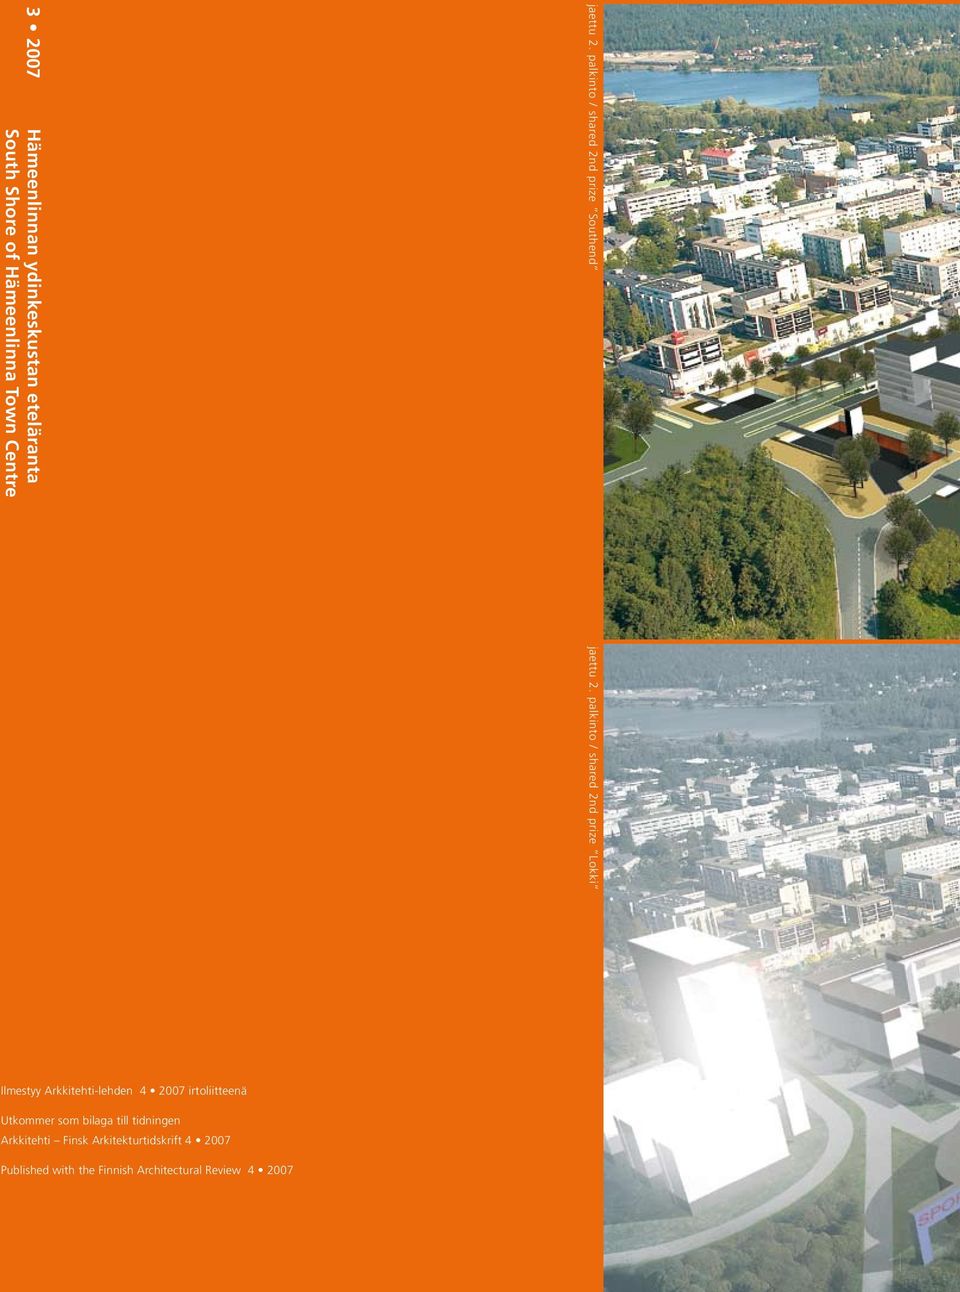 Shore of Hämeenlinna Town Centre Ilmestyy Arkkitehti-lehden 4 2007 irtoliitteenä